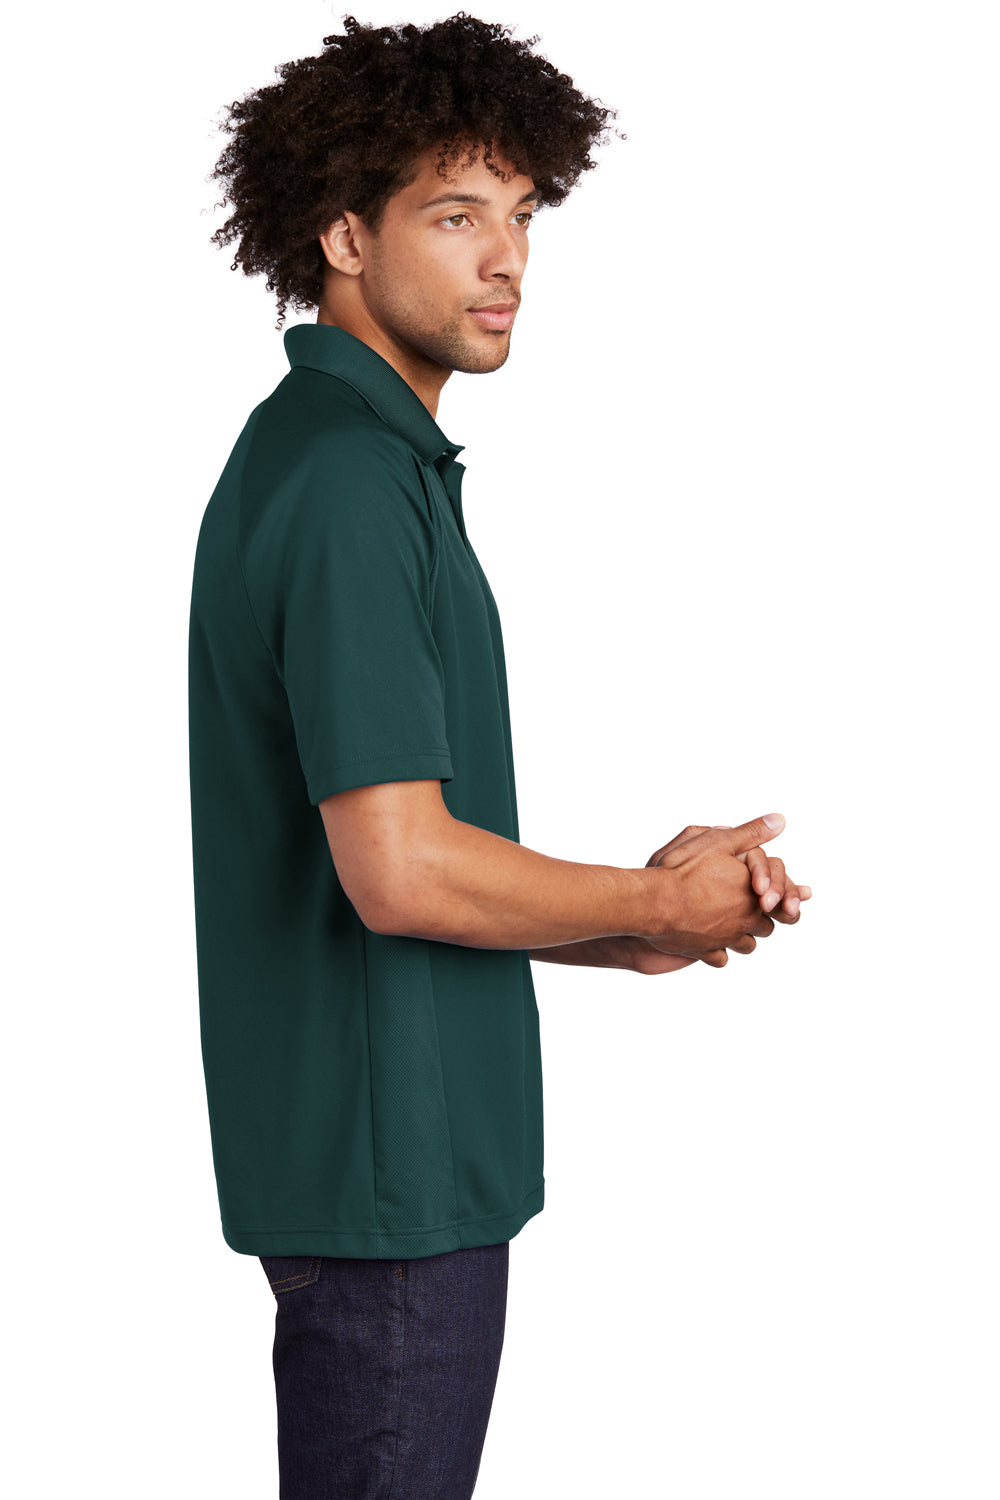 Sport-Tek T474 Mens Dri-Mesh Moisture Wicking Short Sleeve Polo Shirt Forest Green Side